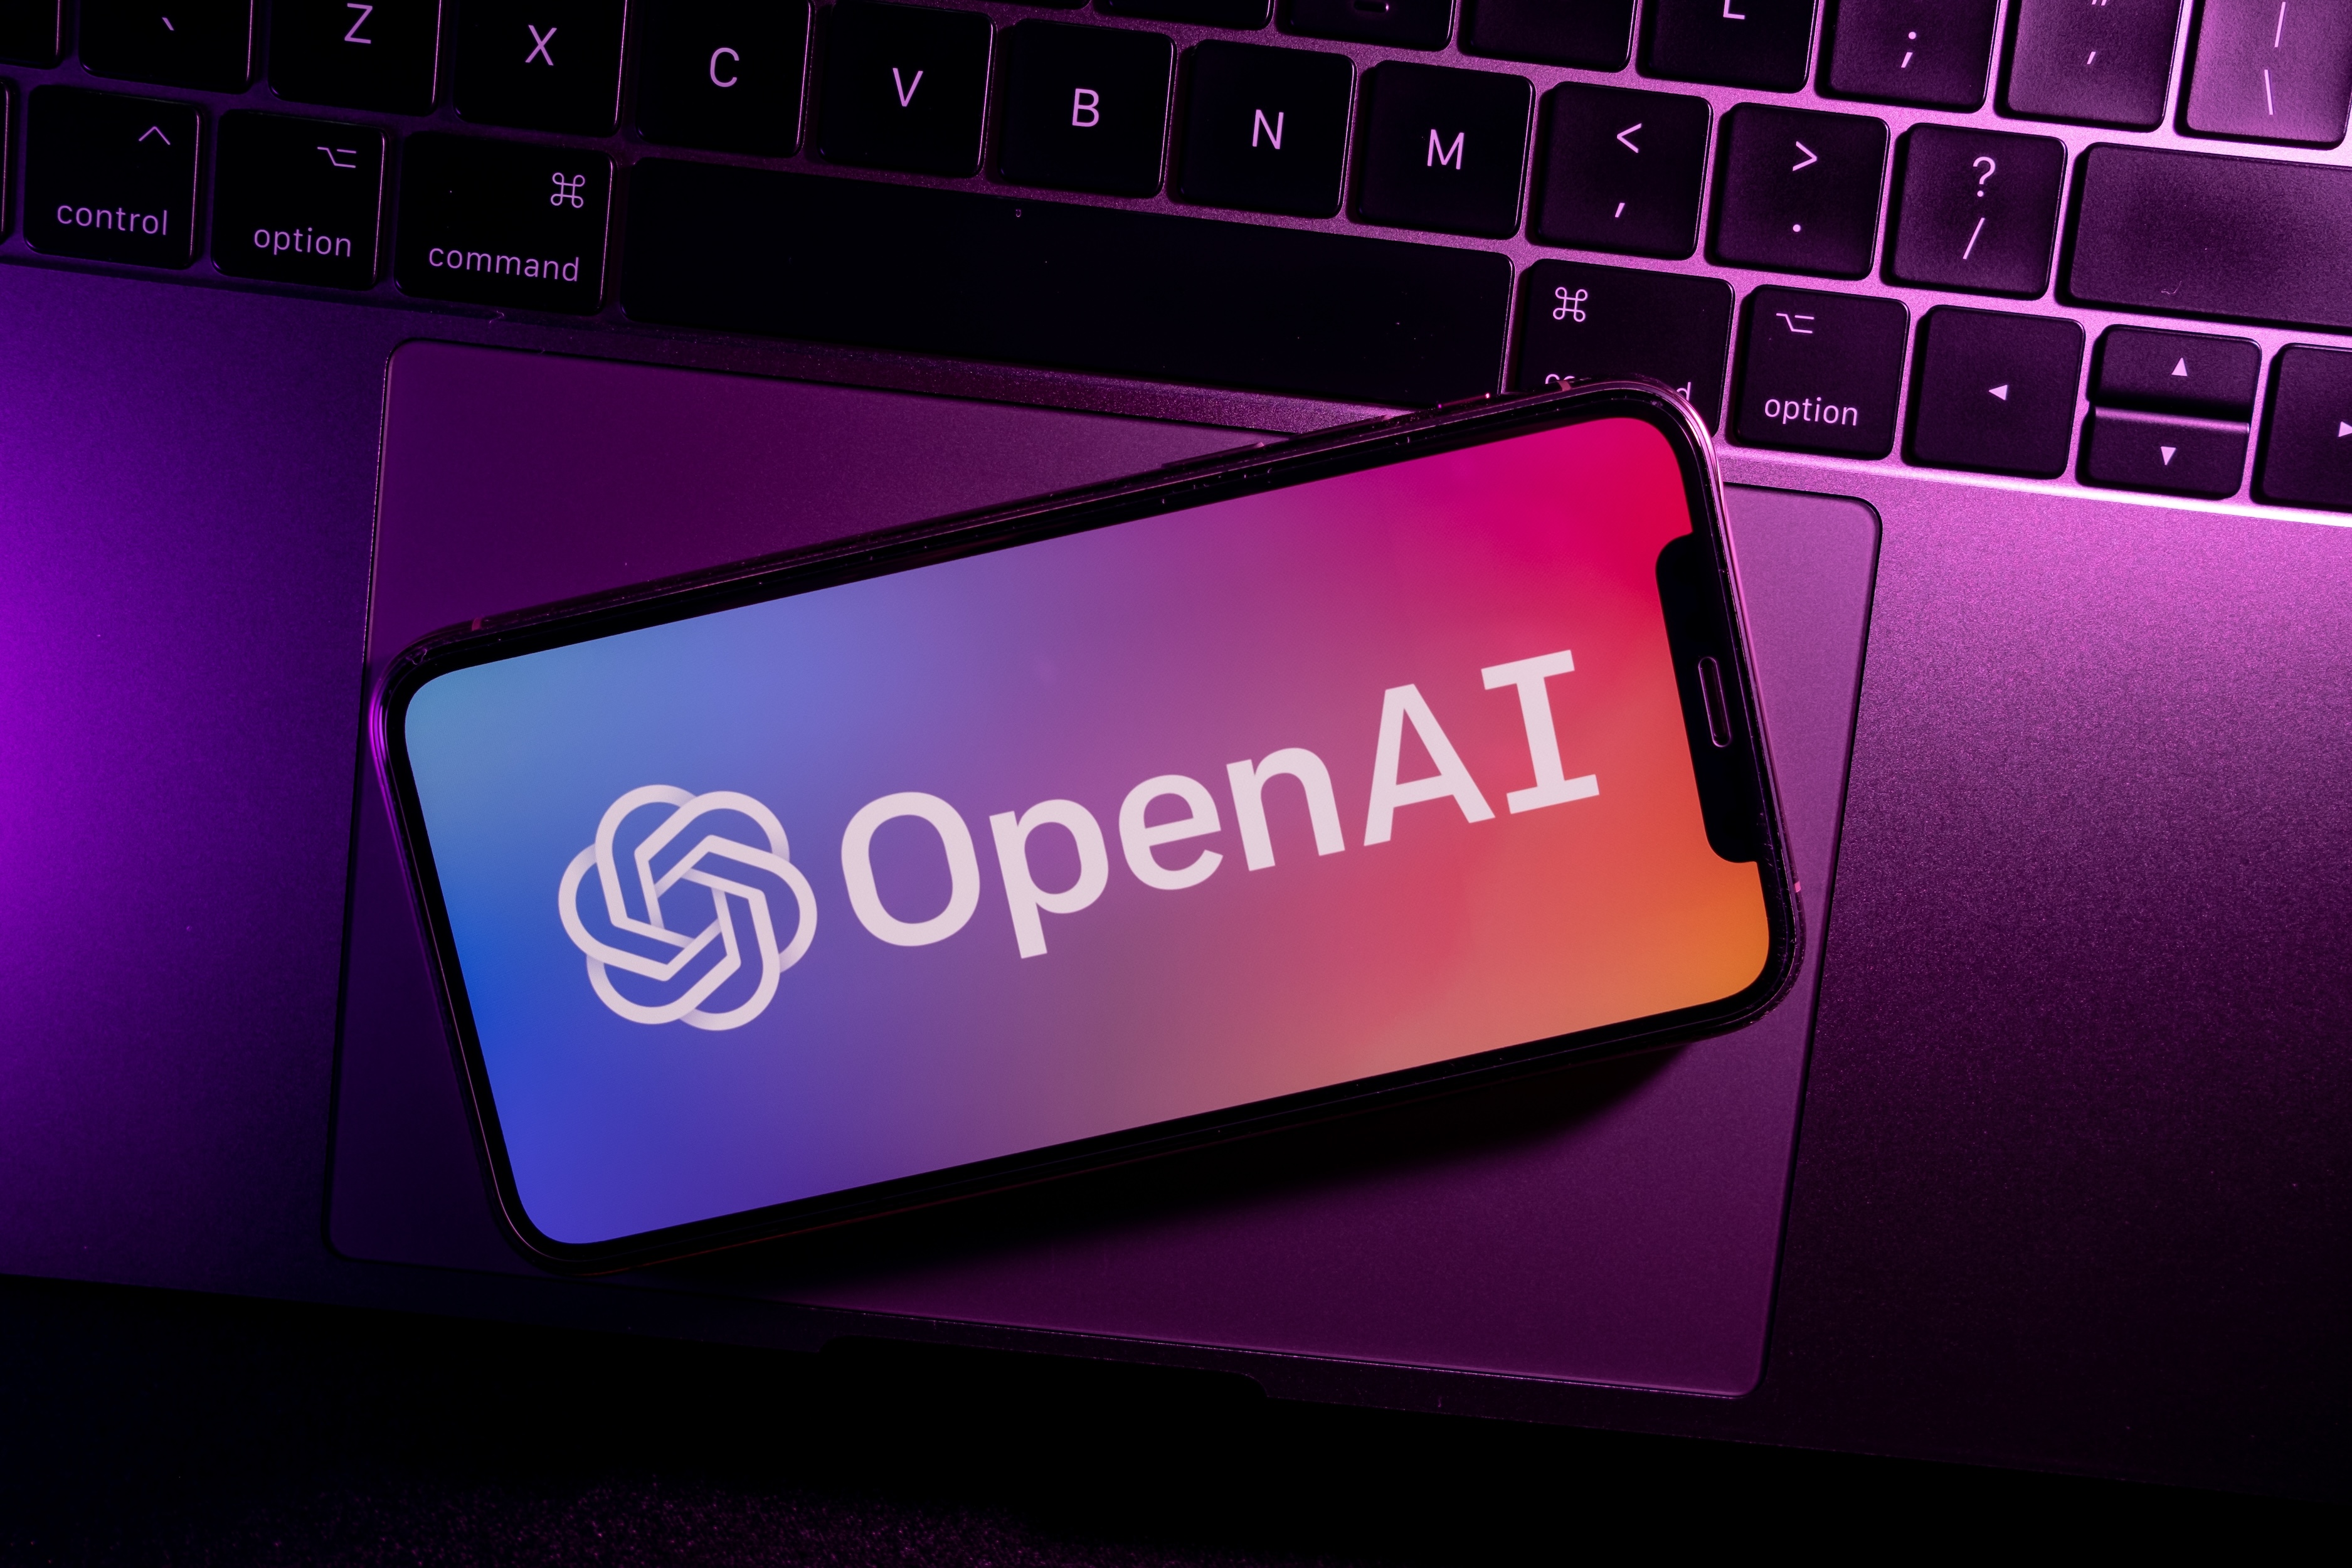 Un éminent cadre d'Apple rejoint le conseil d'administration d'OpenAI... Mais pourquoi donc ?